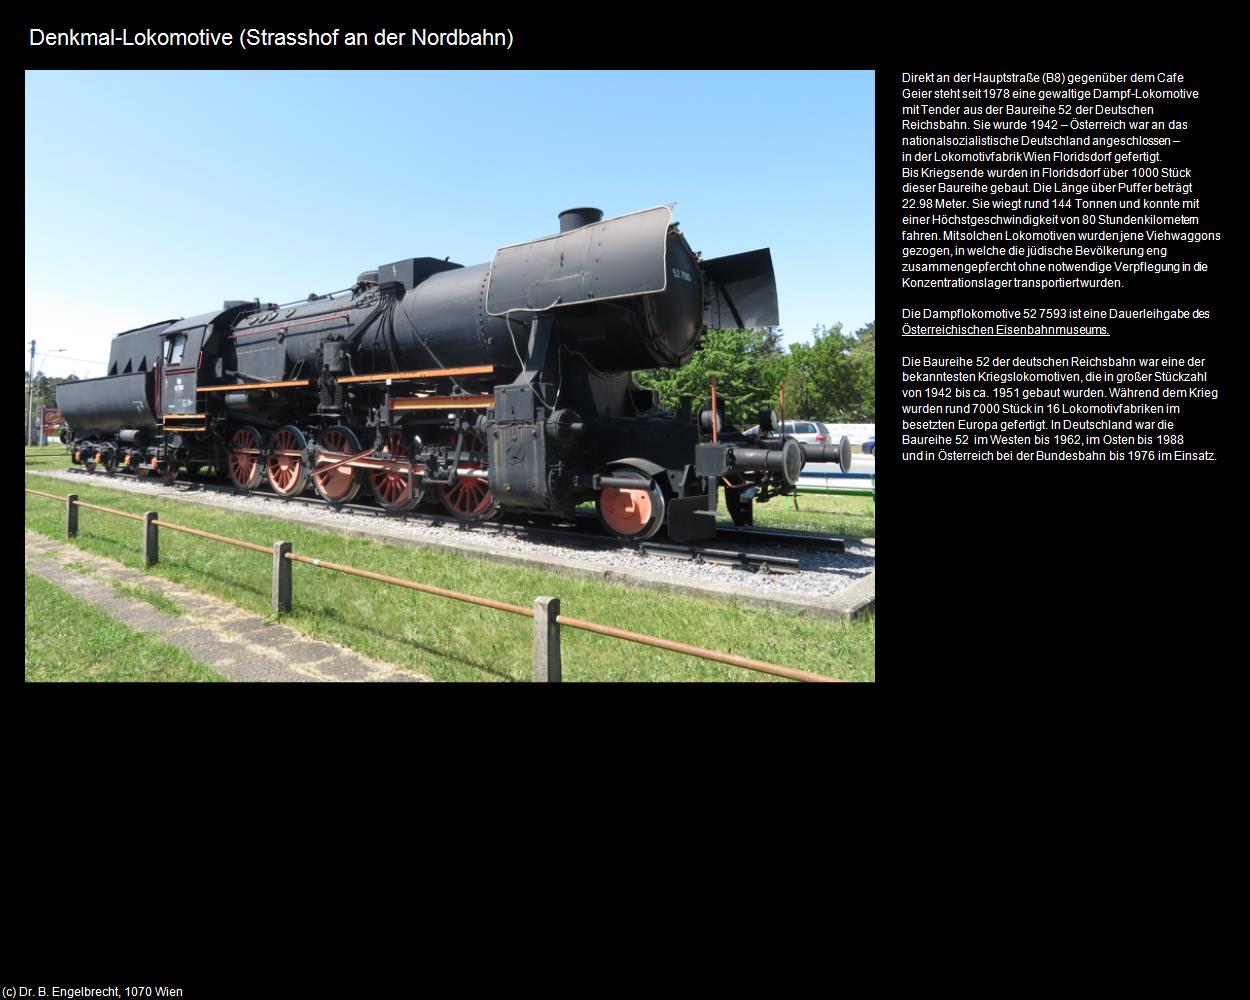 Denkmal-Lokomotive (Strasshof an der Nordbahn) in Kulturatlas-NIEDERÖSTERREICH(c)B.Engelbrecht